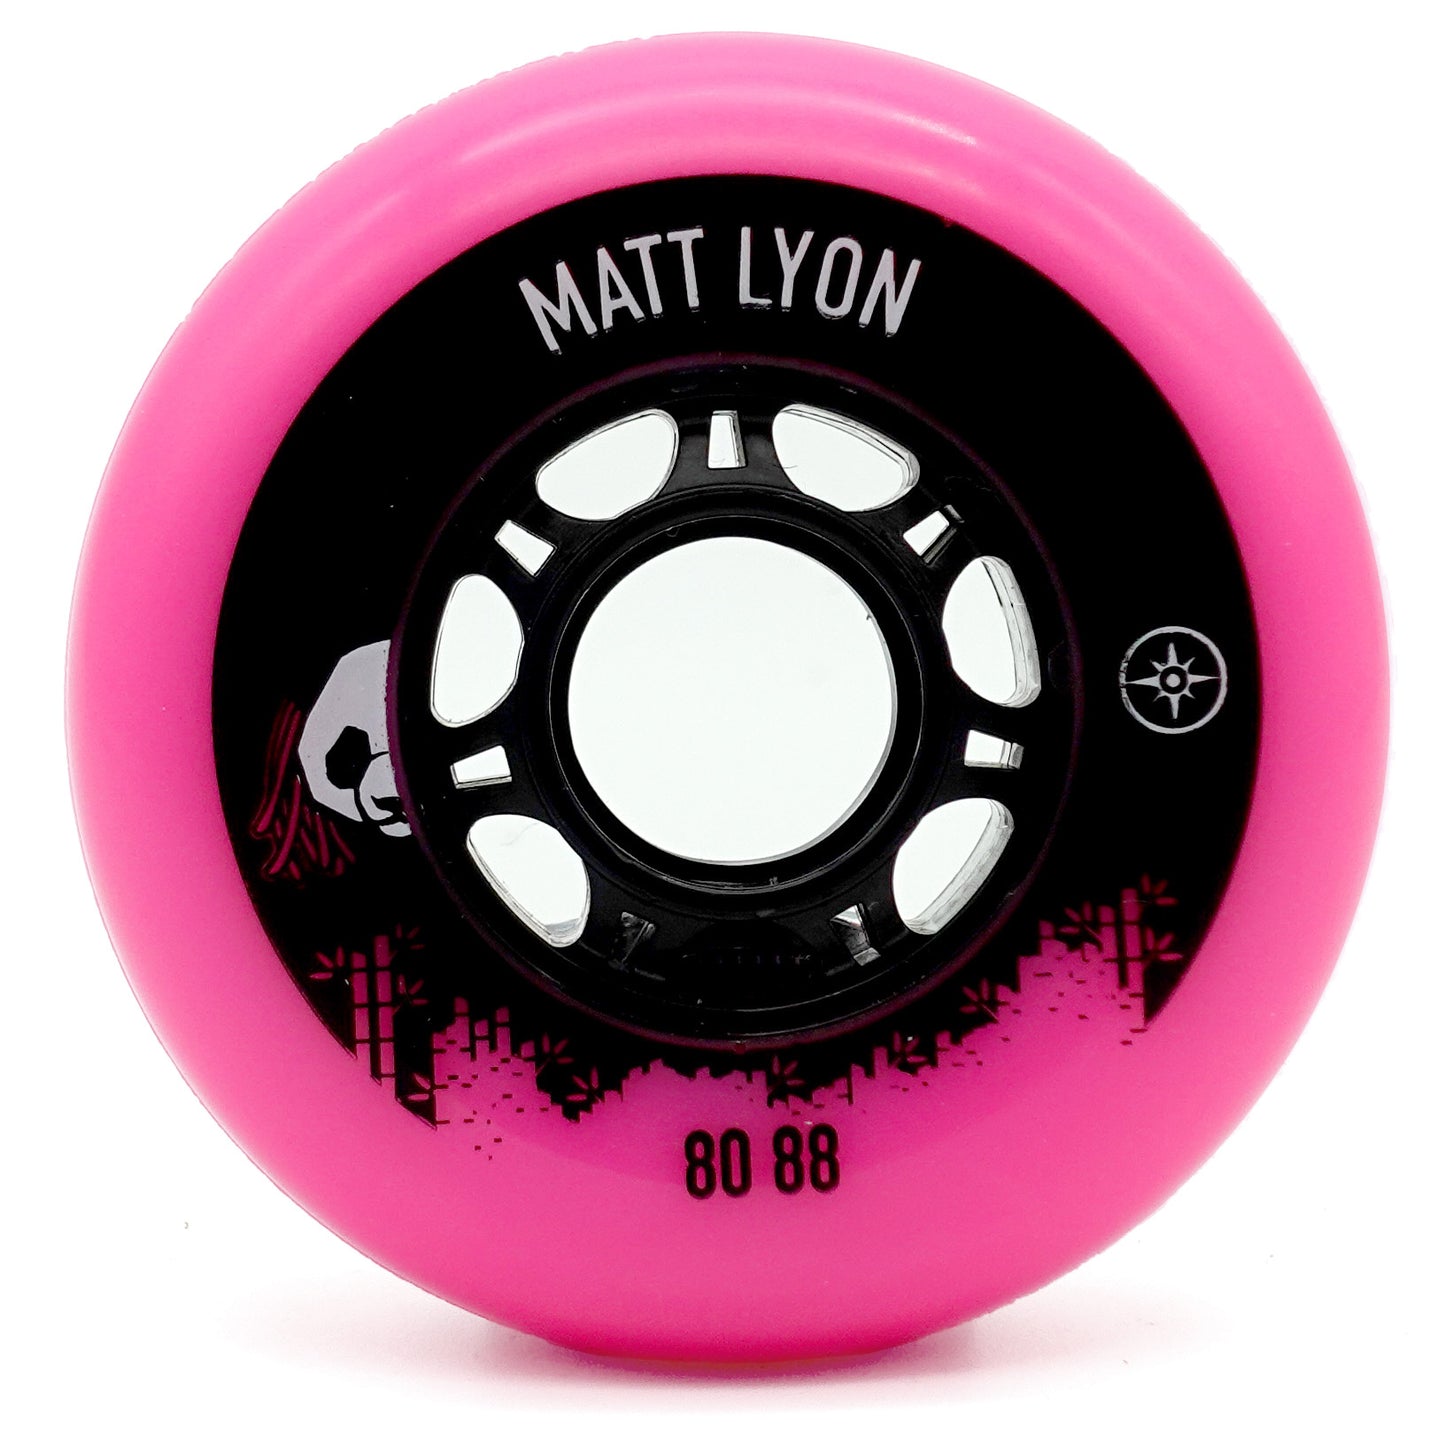 80mm 88a - Matt Lyon Wheels